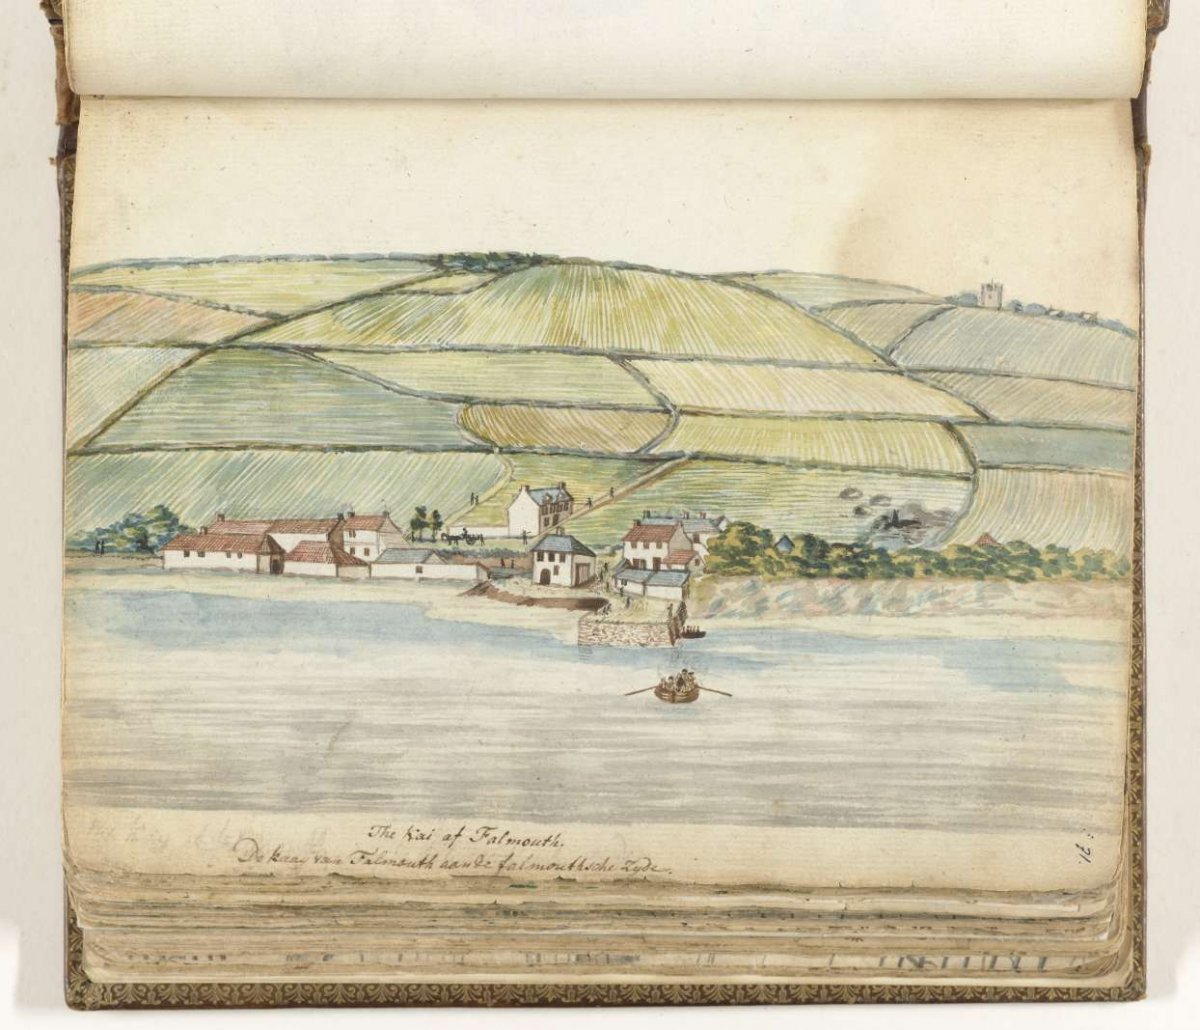 Falmouth wharf, Jan Brandes, 1778